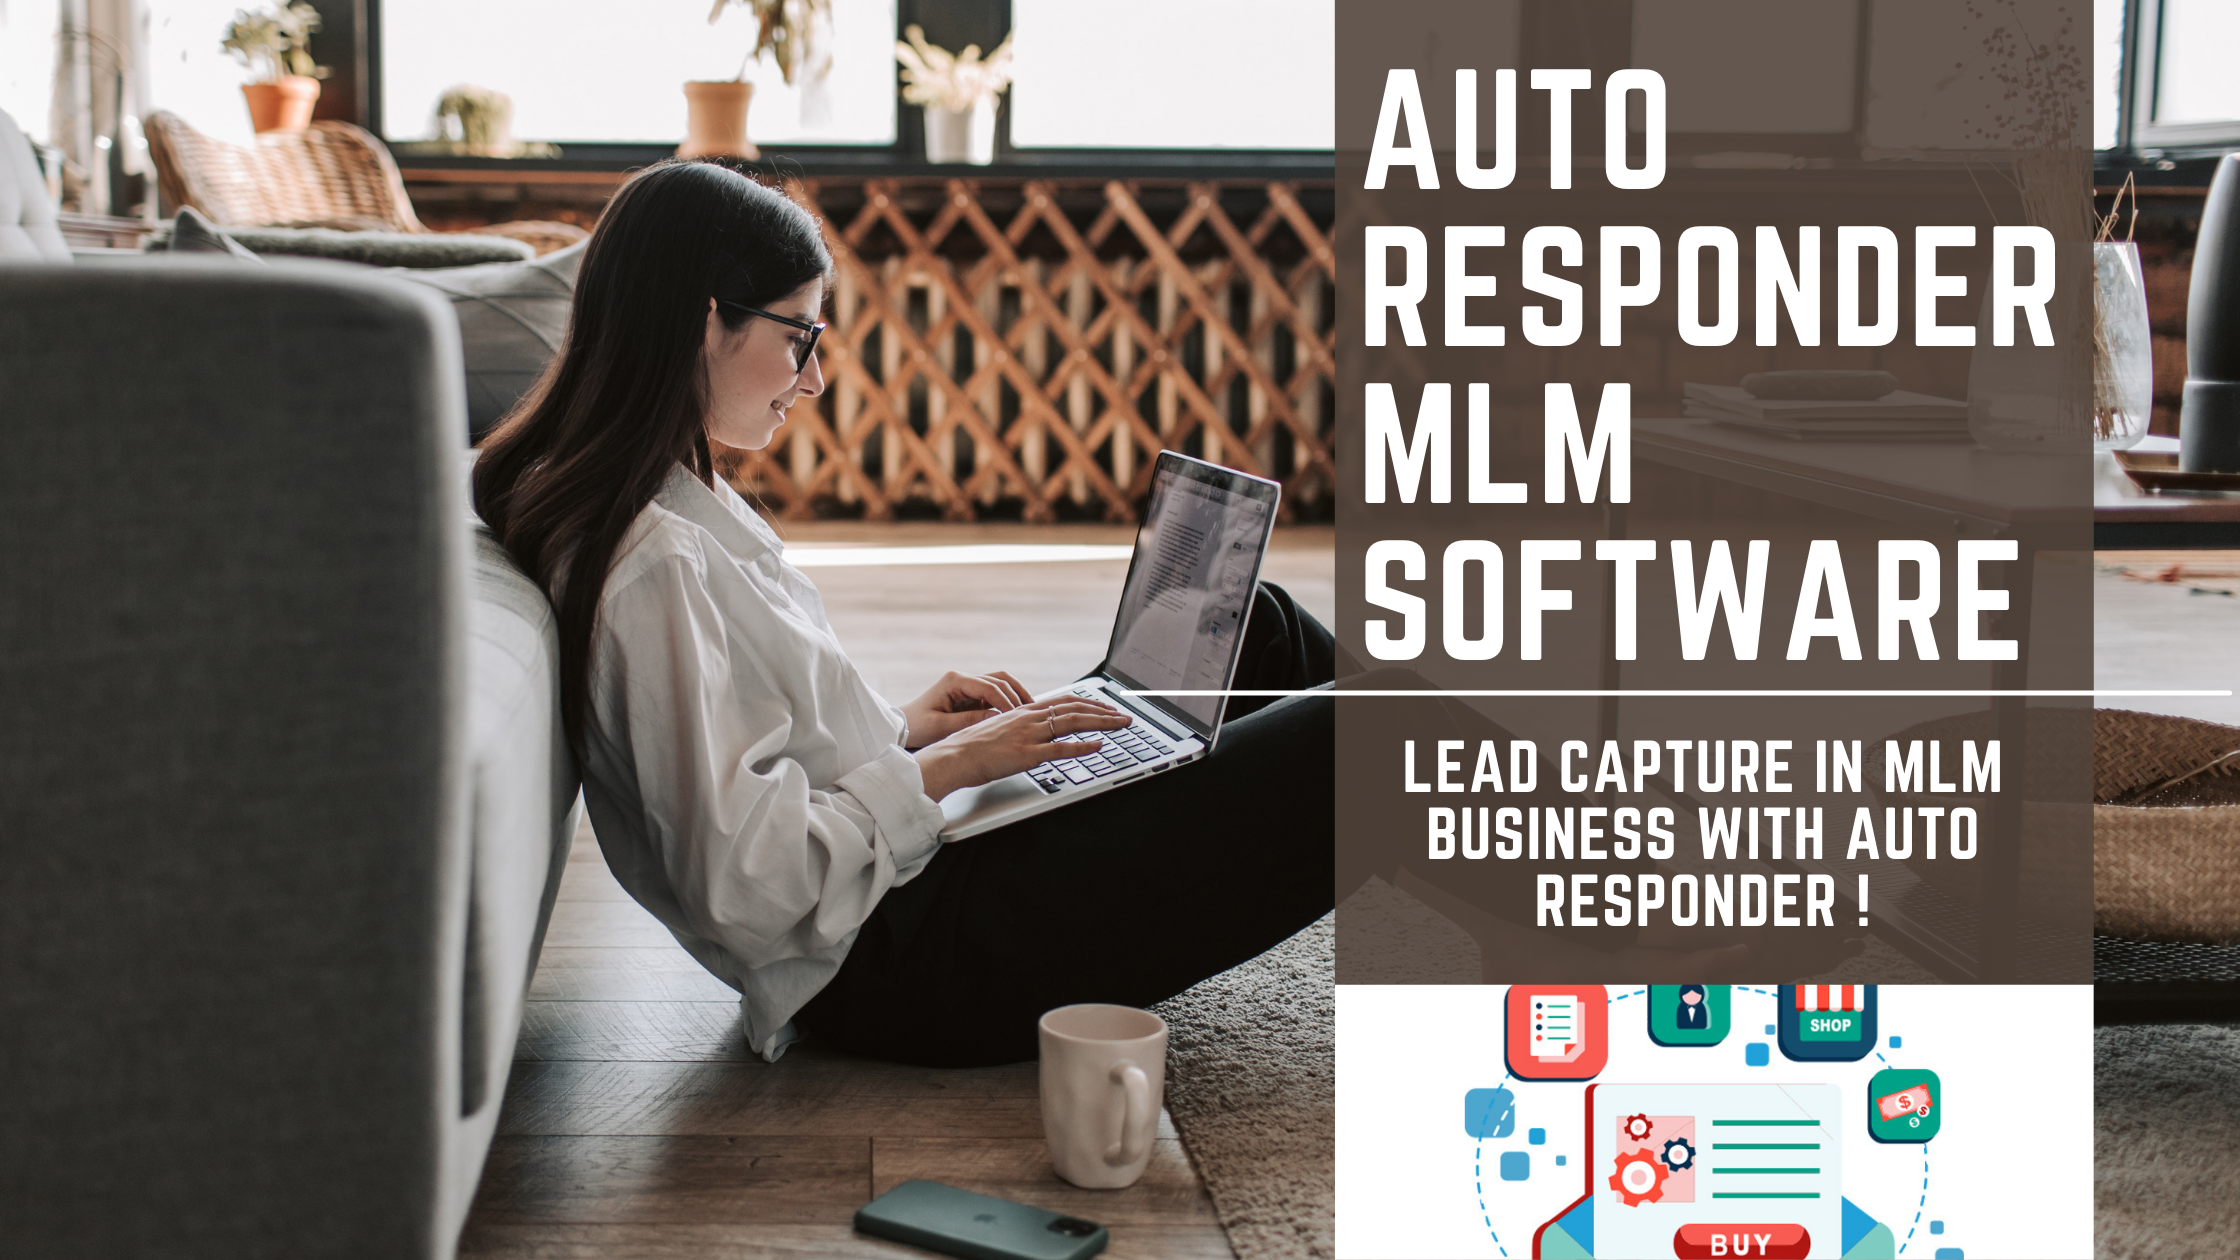 Autoresponder MLM Software